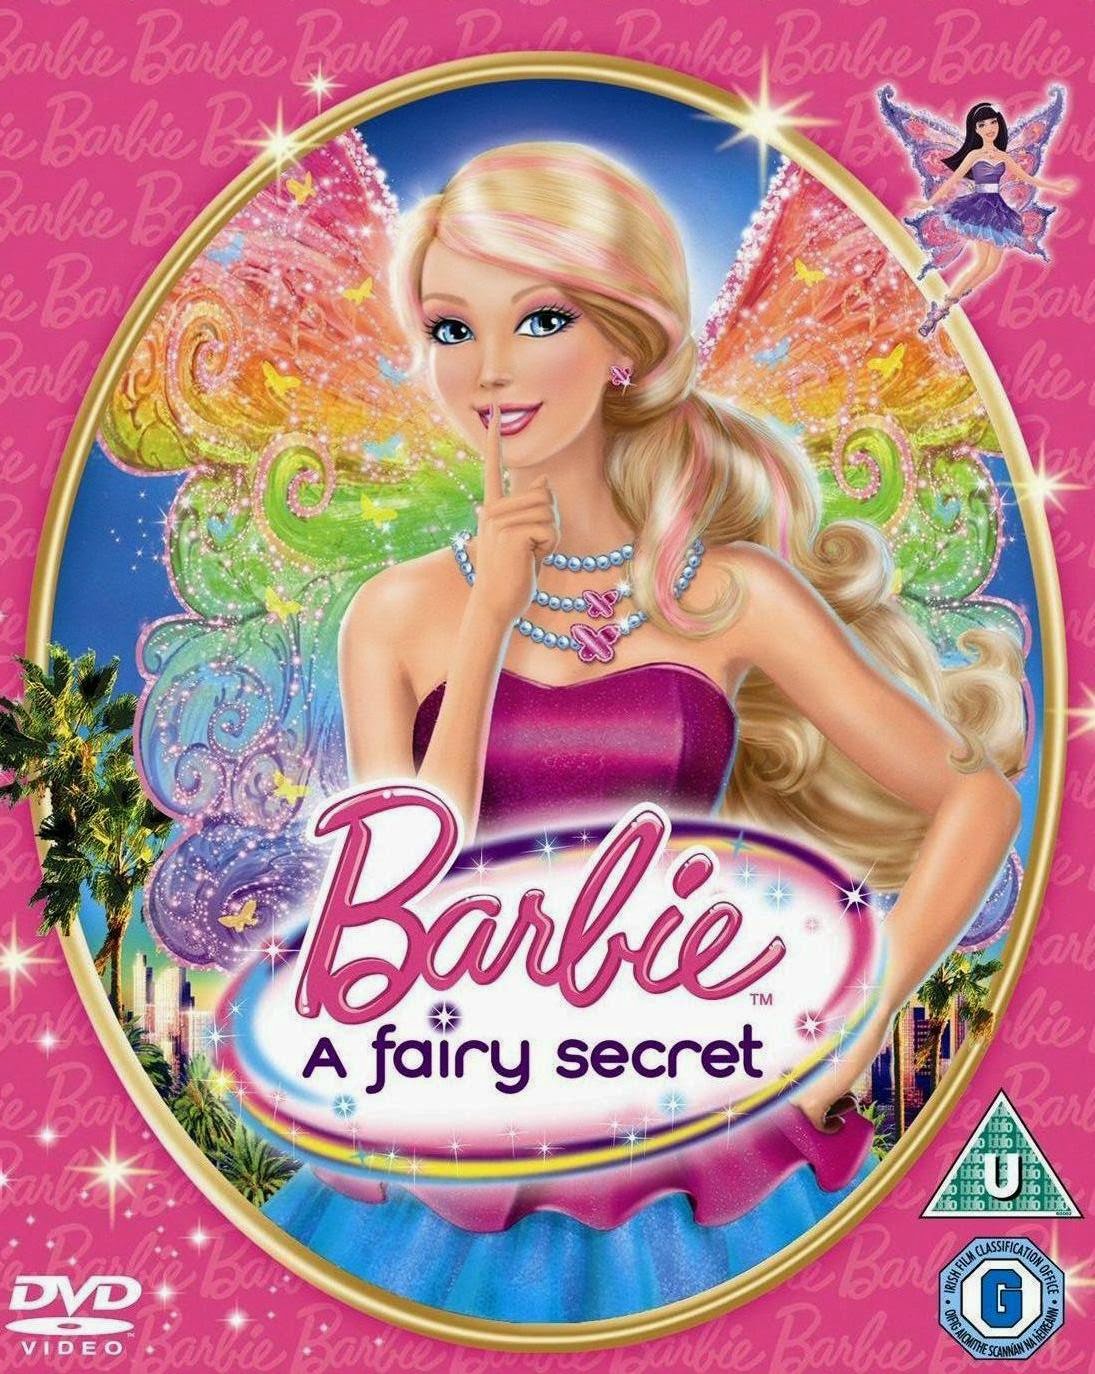 Barbie: A Fairy Secret (2011) Full Movie HD